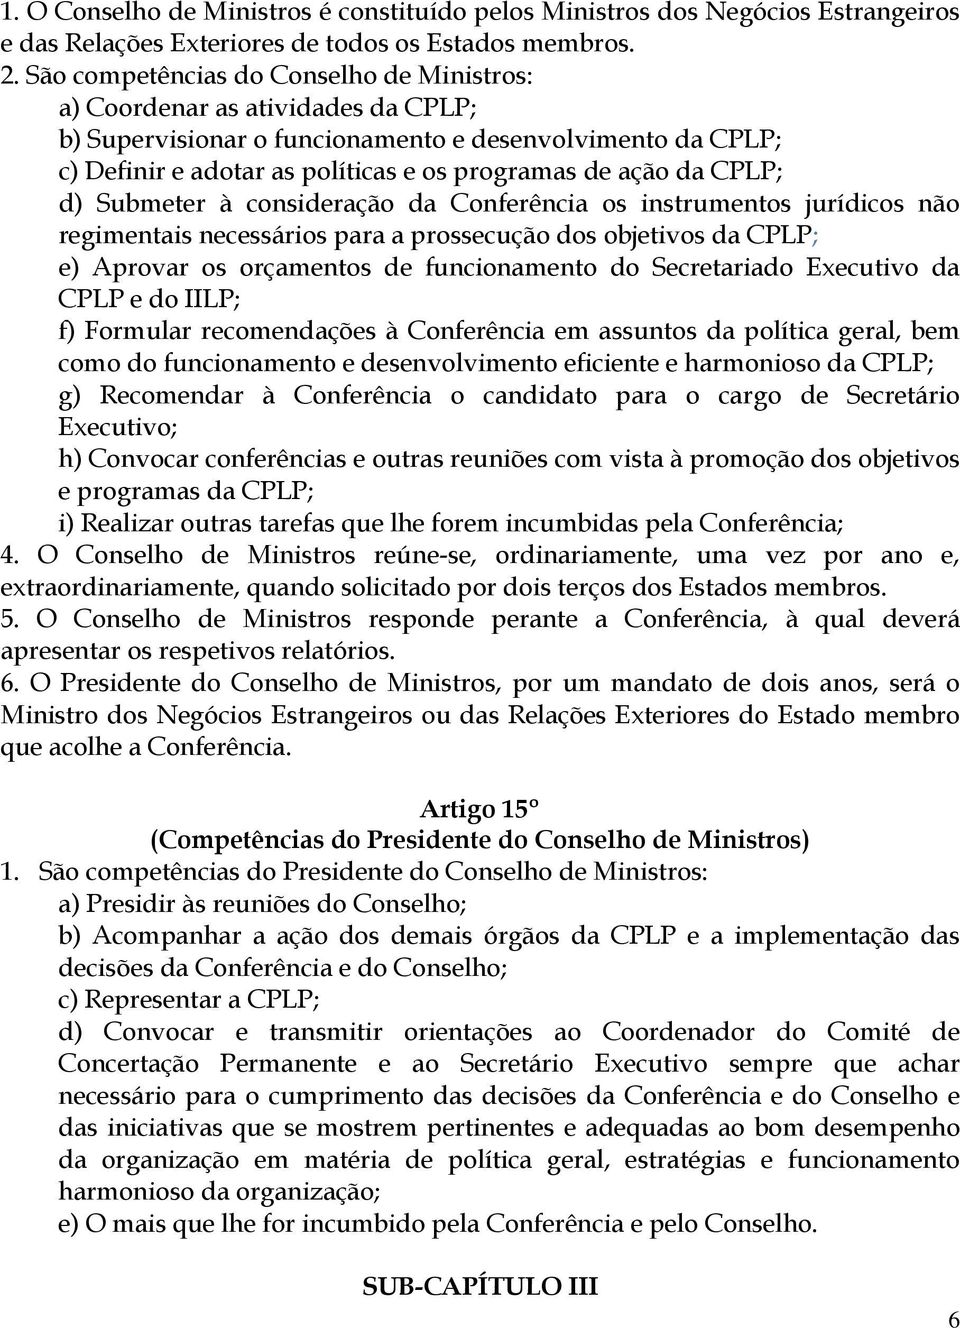 CPLP; d) Submeter à consideração da Conferência os instrumentos jurídicos não regimentais necessários para a prossecução dos objetivos da CPLP; e) Aprovar os orçamentos de funcionamento do